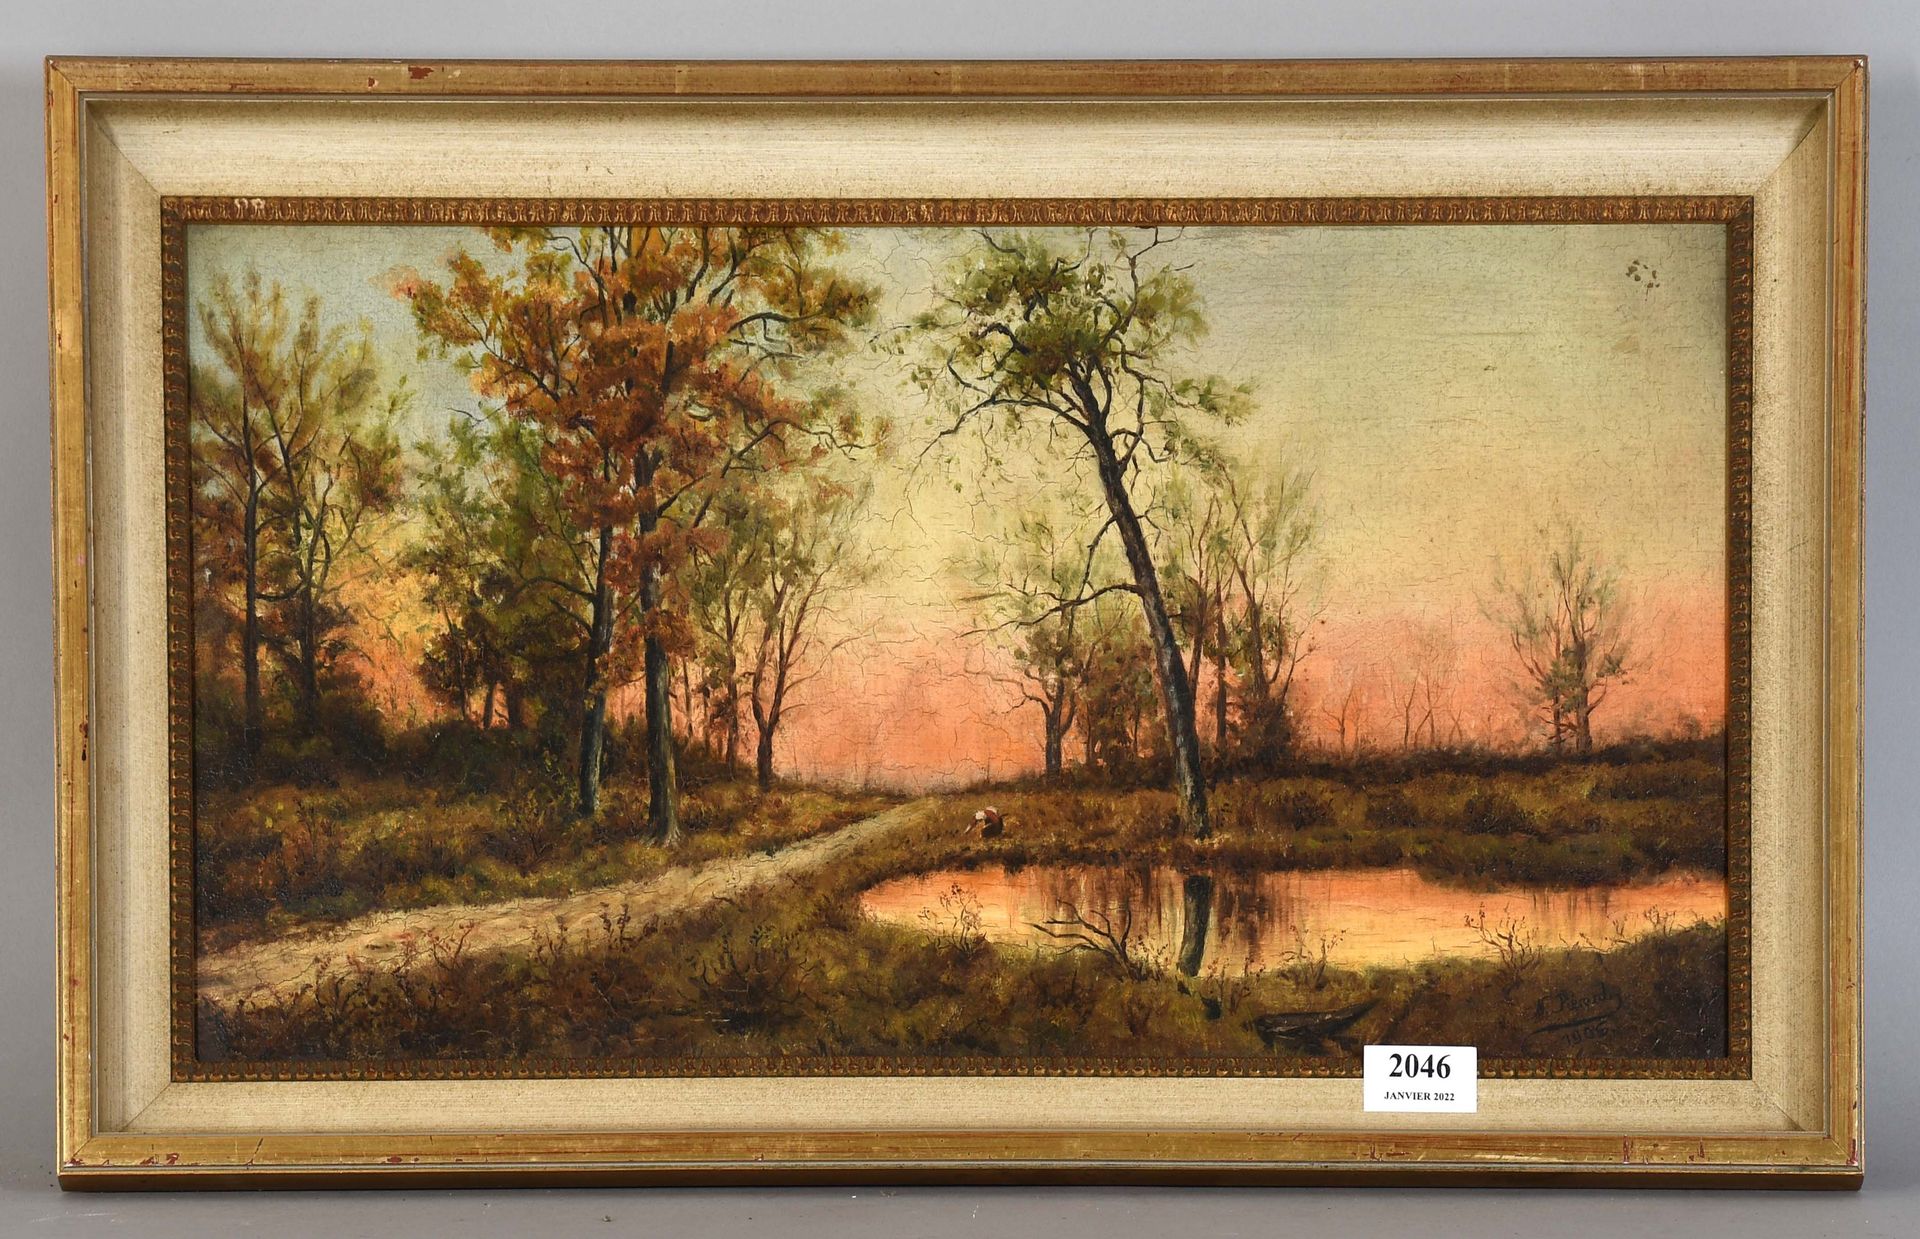 Null N.皮耶罗

布面油画："Fagotière"。签名和日期为1906年。

尺寸：28厘米x53厘米。